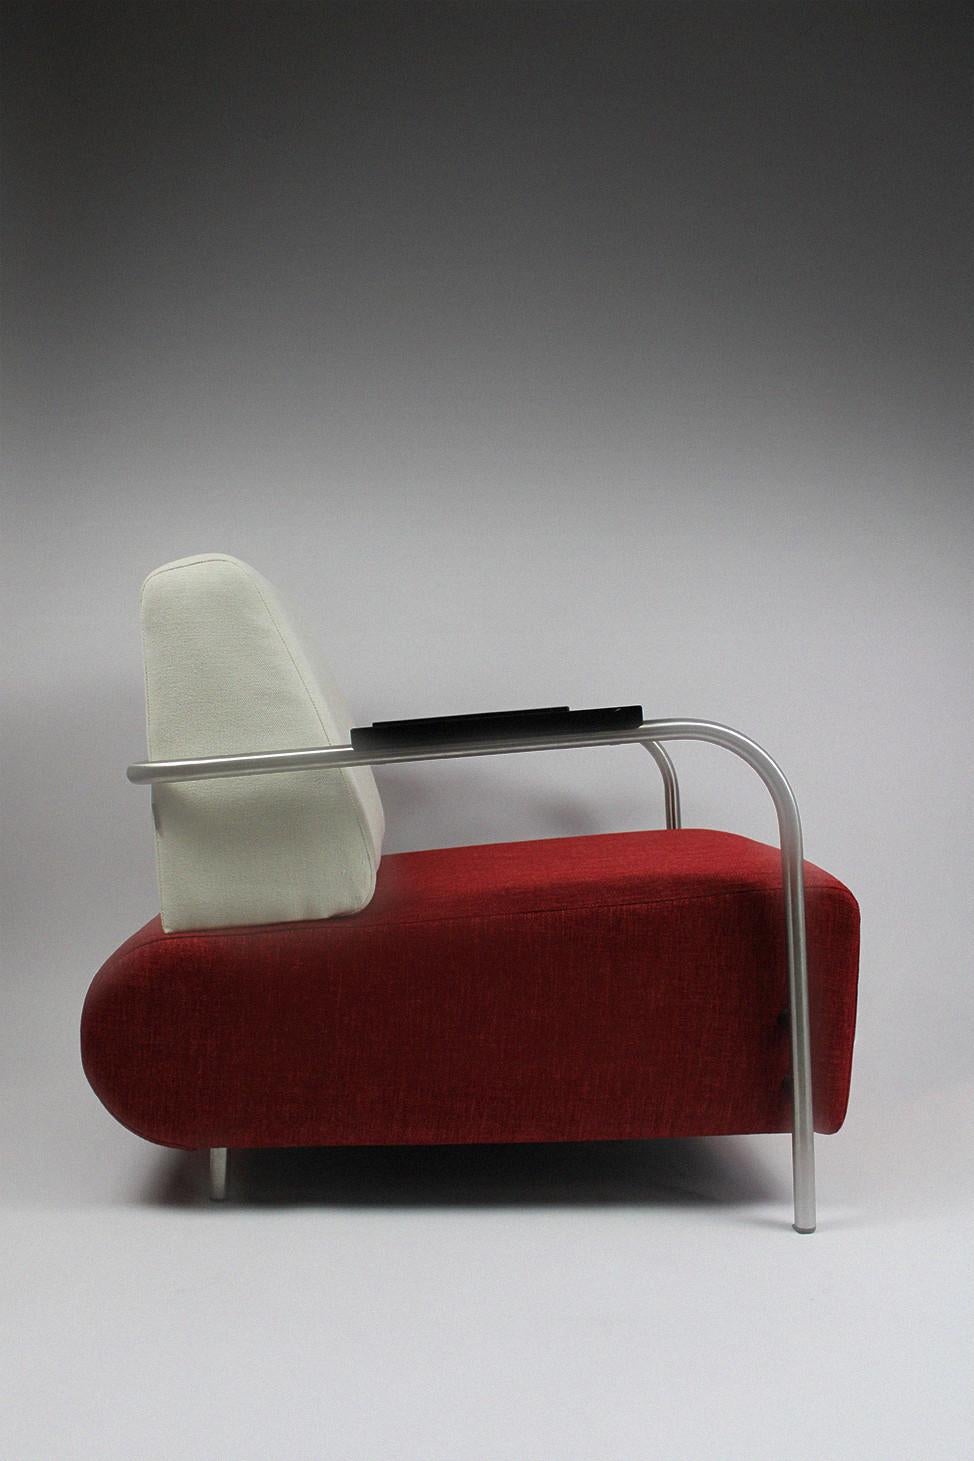 Ces chaises longues innovantes de Jamé, une entreprise néerlandaise de mobilier reconnue pour la force de ses formes et de son style, les ont propulsées sur le devant de la scène en tant que marque, ce qu'elles ont réussi à faire immédiatement grâce